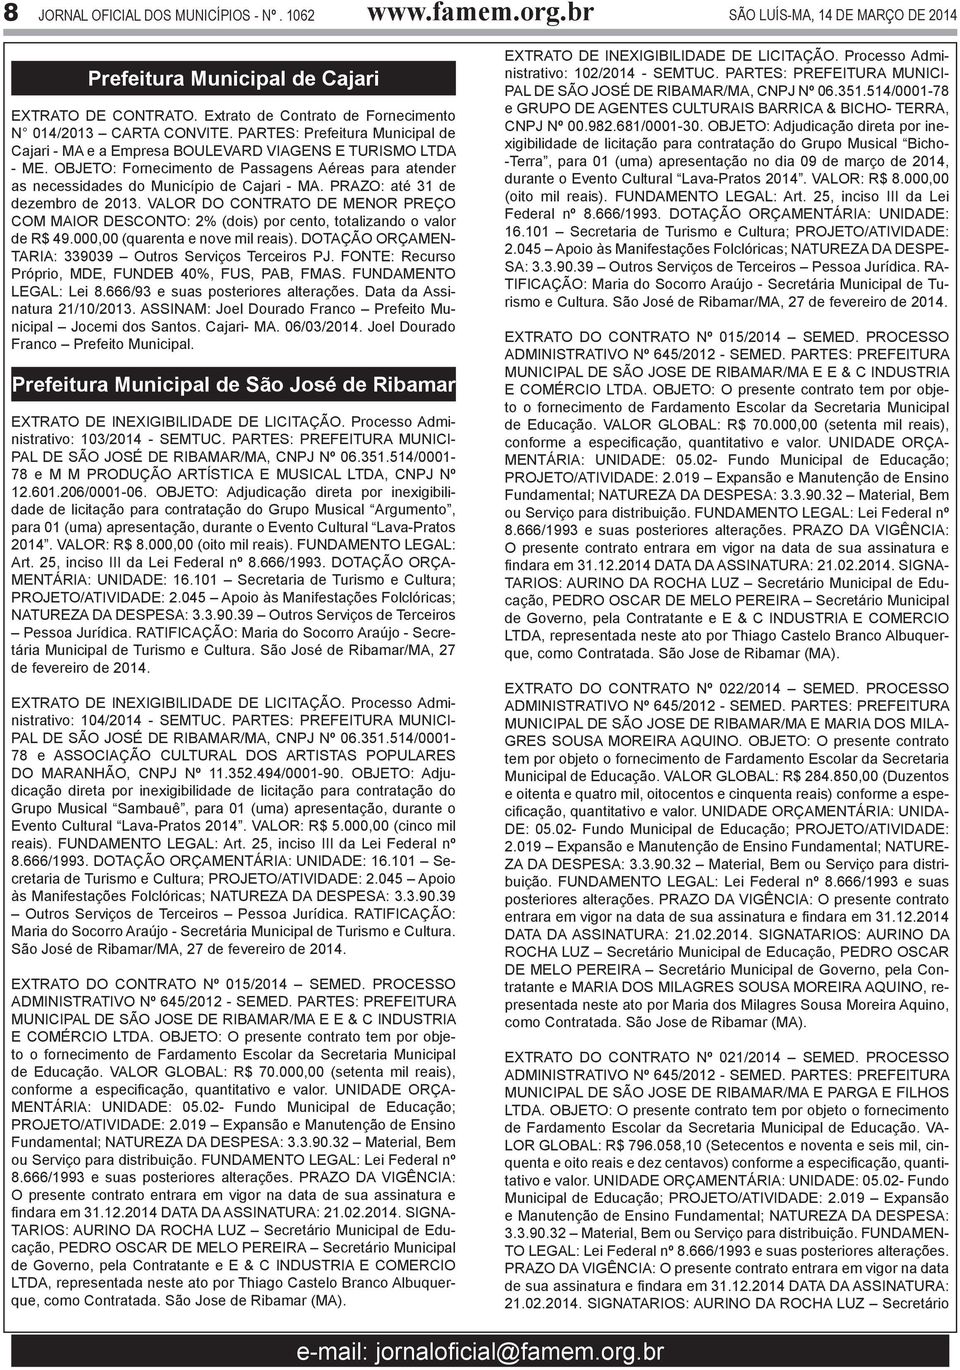 OBJETO: Fornecimento de Passagens Aéreas para atender as necessidades do Município de Cajari - MA. PRAZO: até 31 de dezembro de 2013.